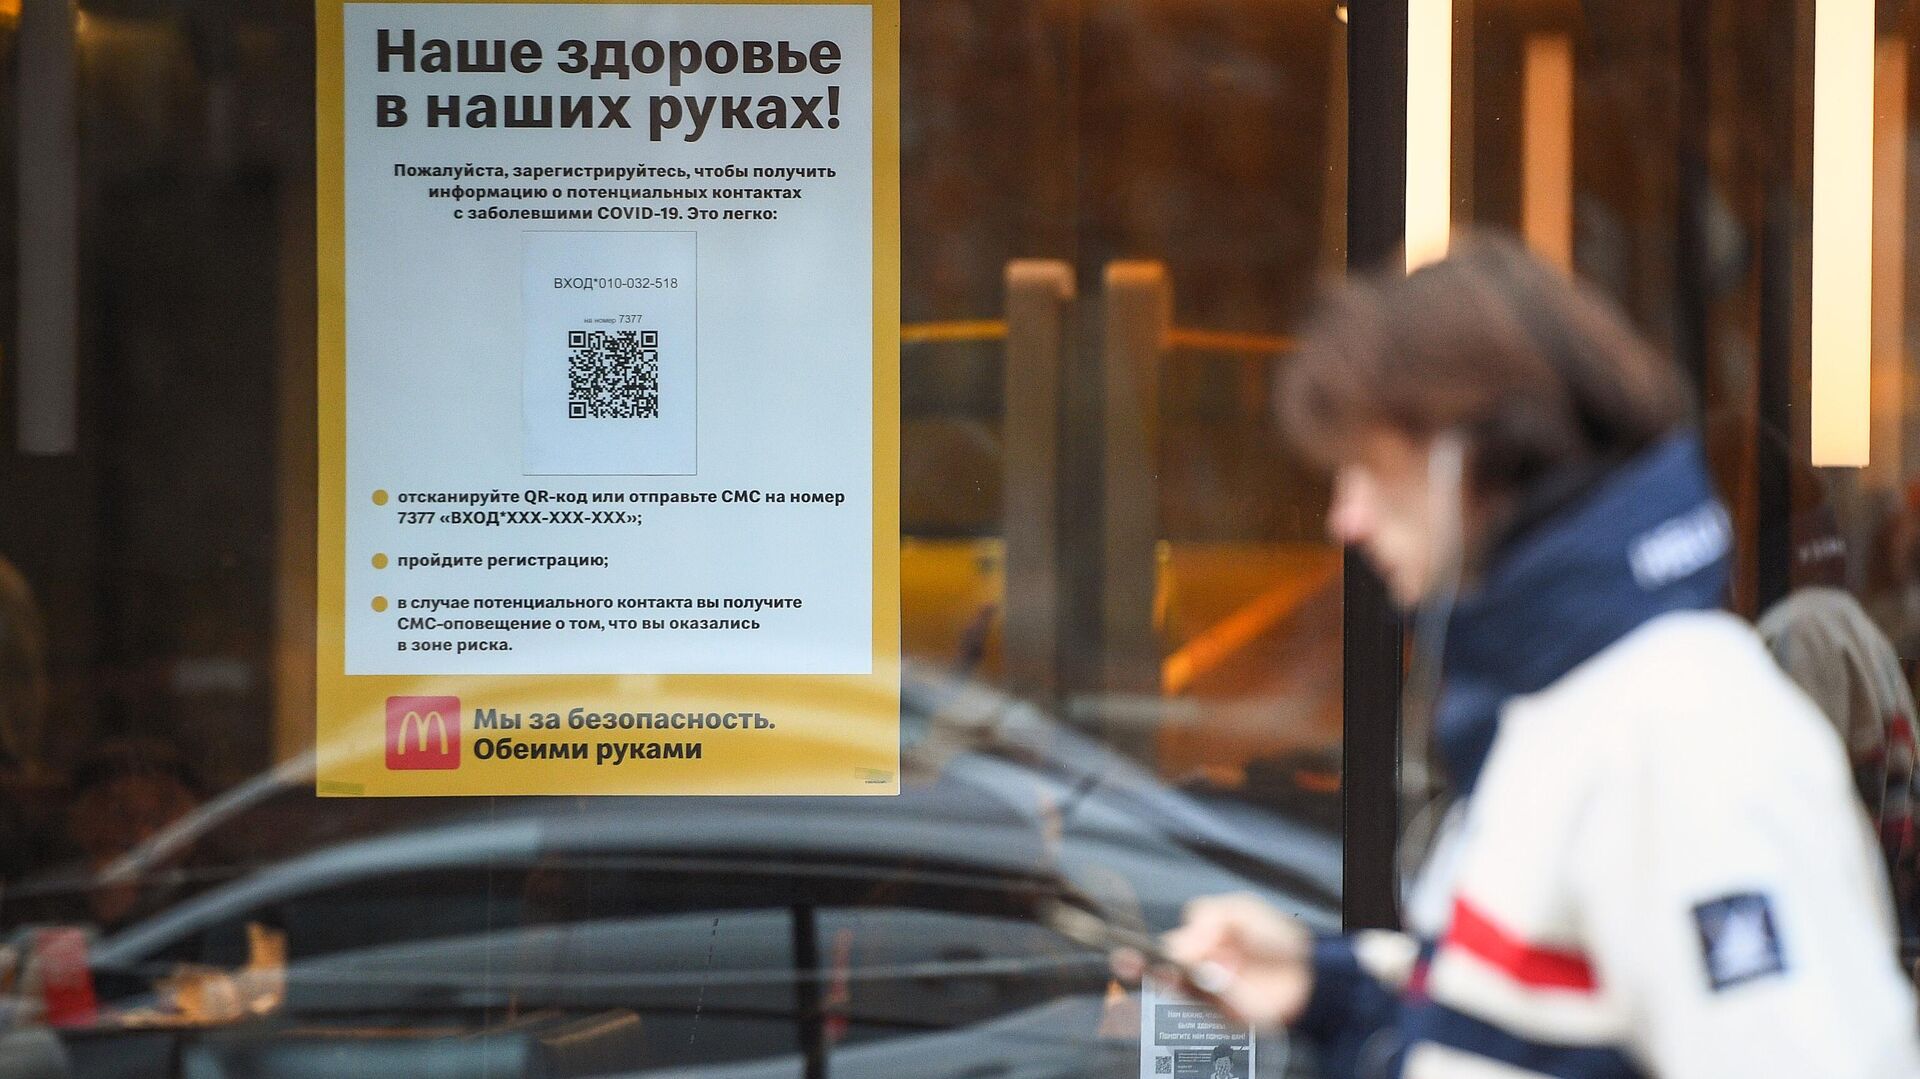 Информационная реклама о программе регистрации посетителей по QR-кодам и SMS в сети ресторанов McDonald's в Москве - РИА Новости, 1920, 10.11.2020